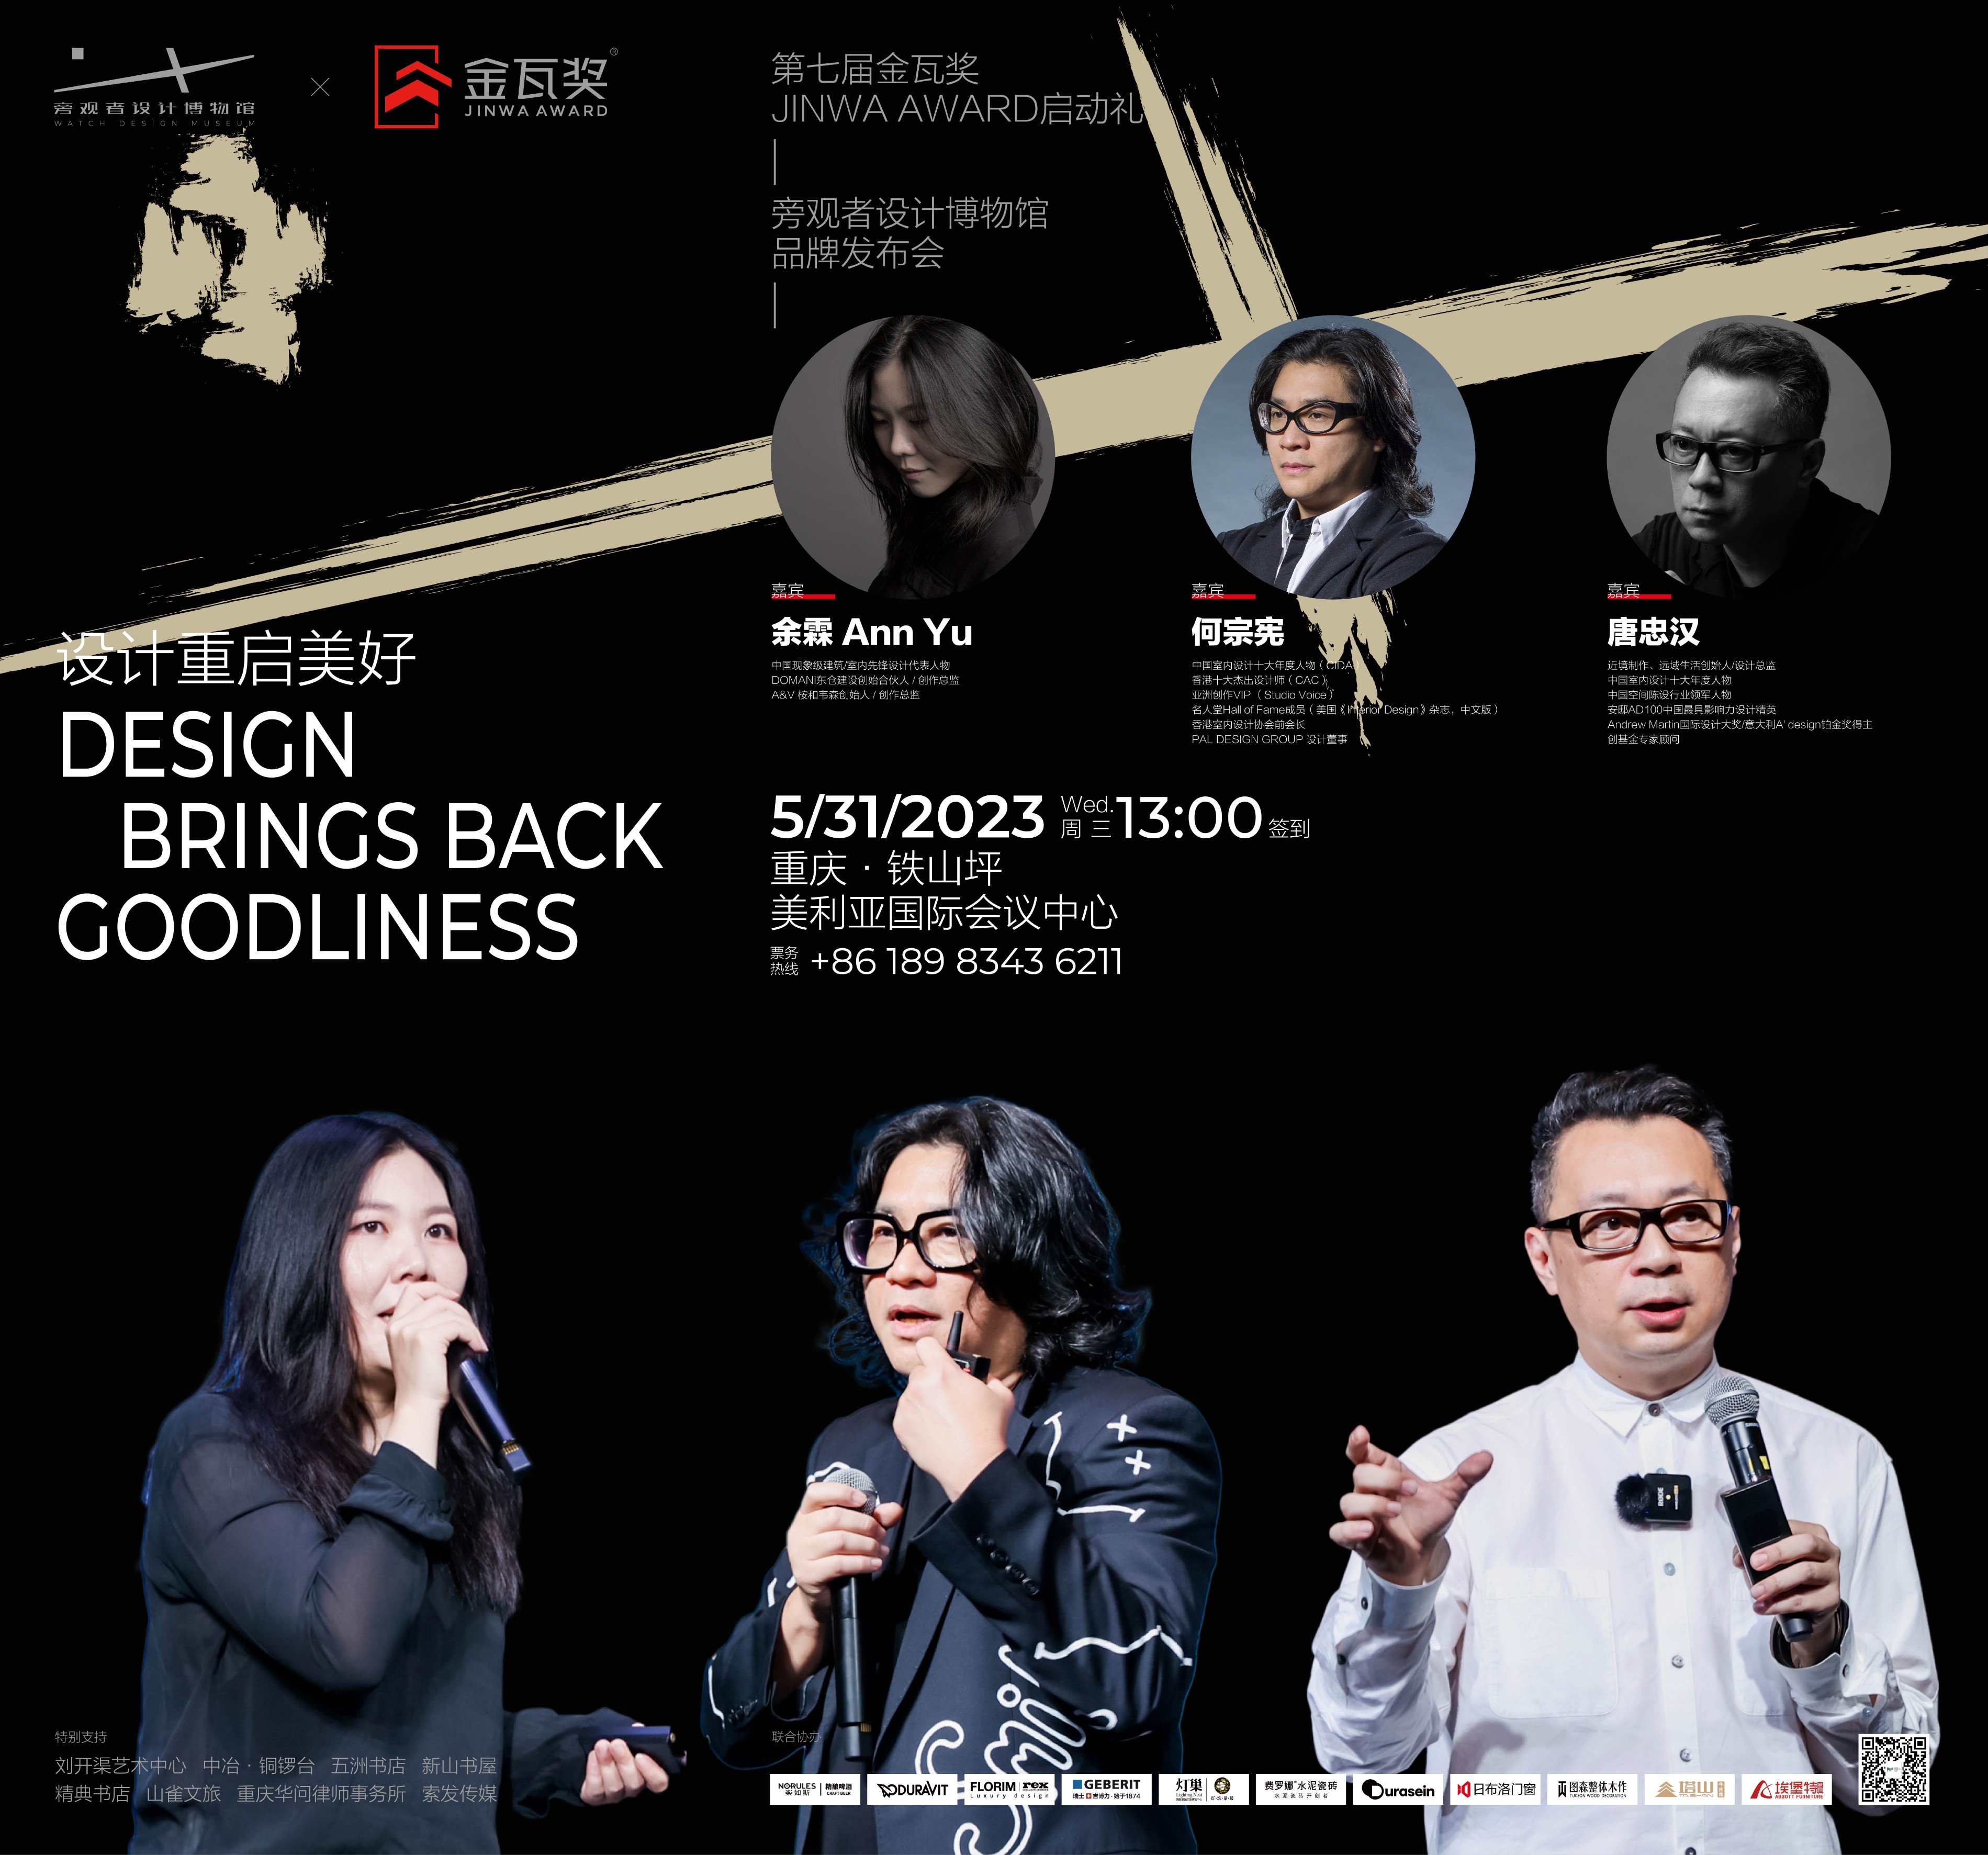 设计重启美好！第七届金瓦奖JINWA AWARD迭代启动，500位设计师与亚洲顶级设计腕余霖、何宗宪、唐忠汉共同见证